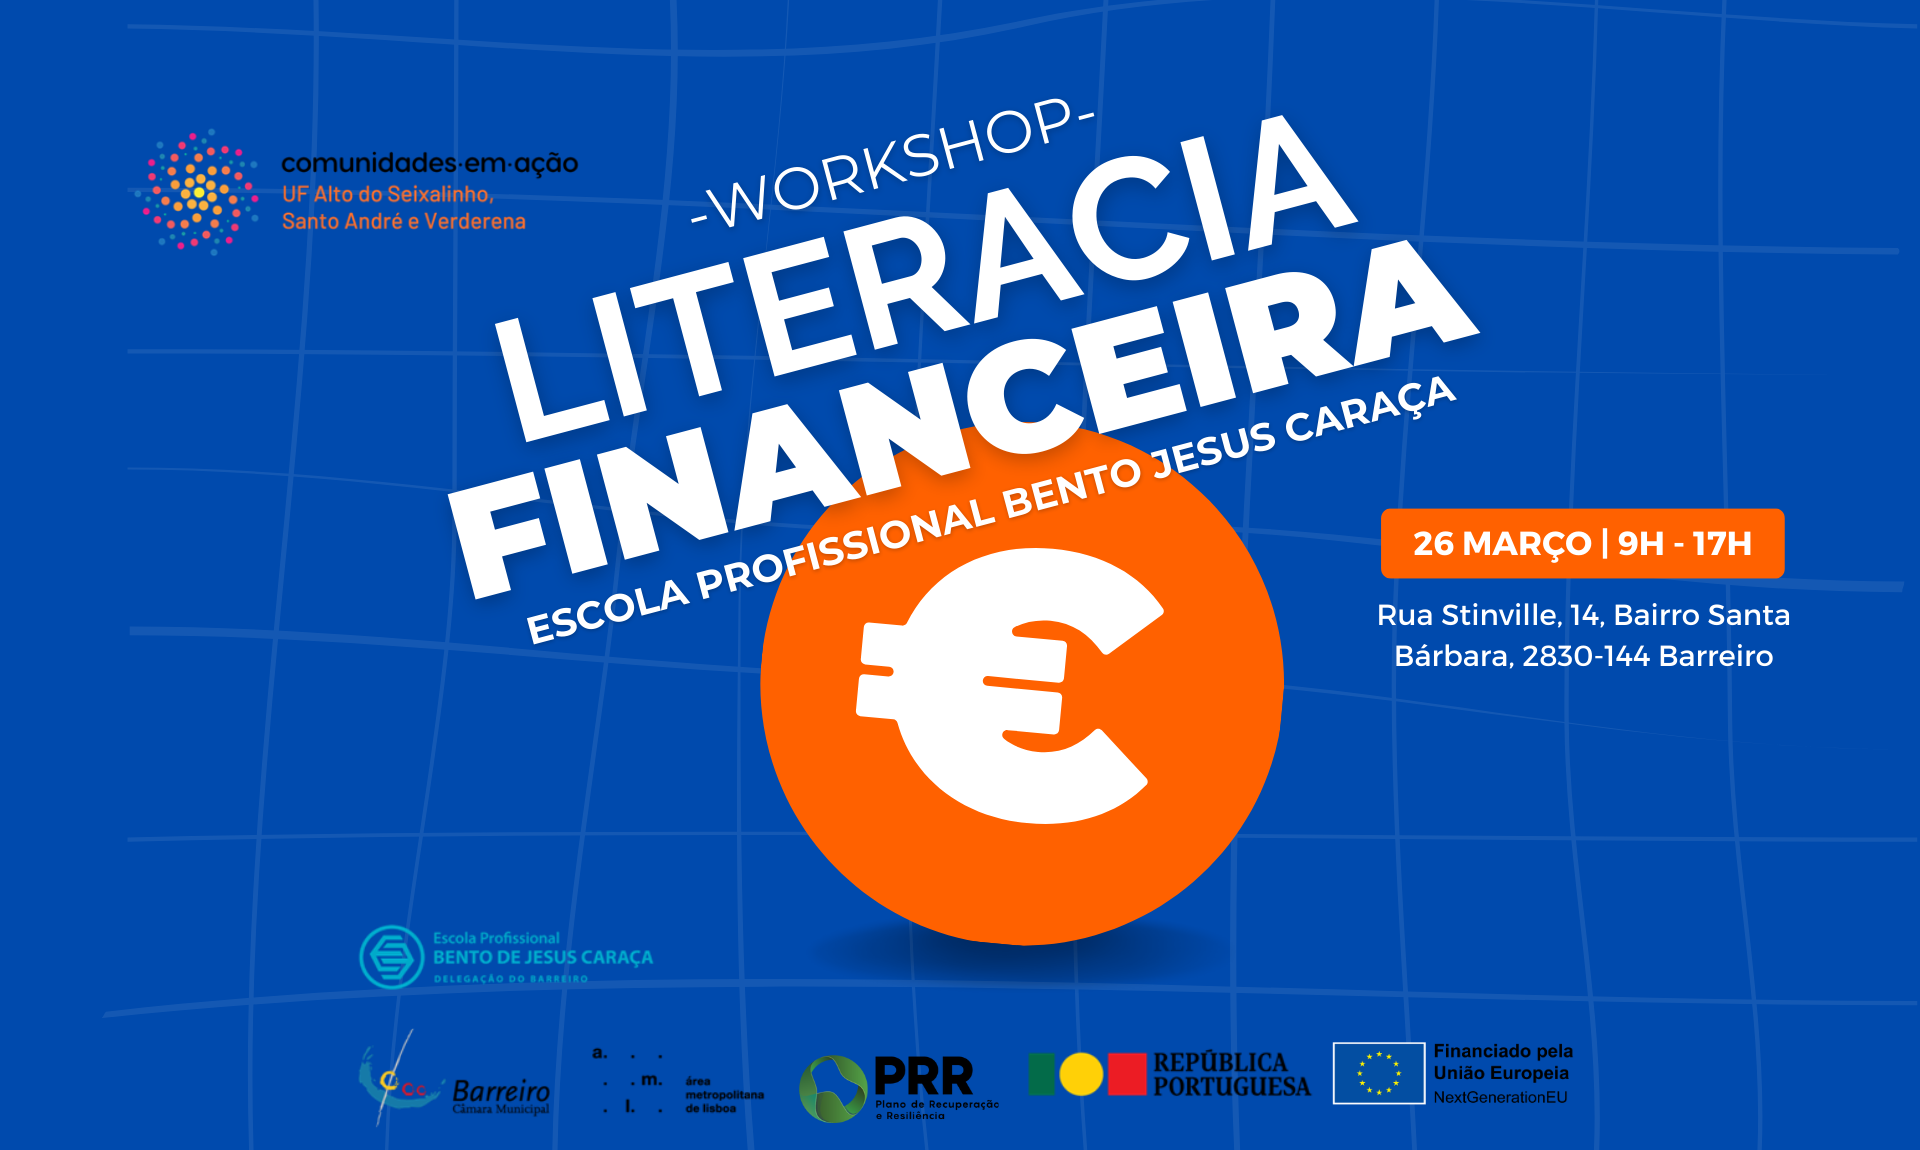 Literacia Financeira | Workshop | 26 de março | Escola Profissional Bento de Jesus Caraça